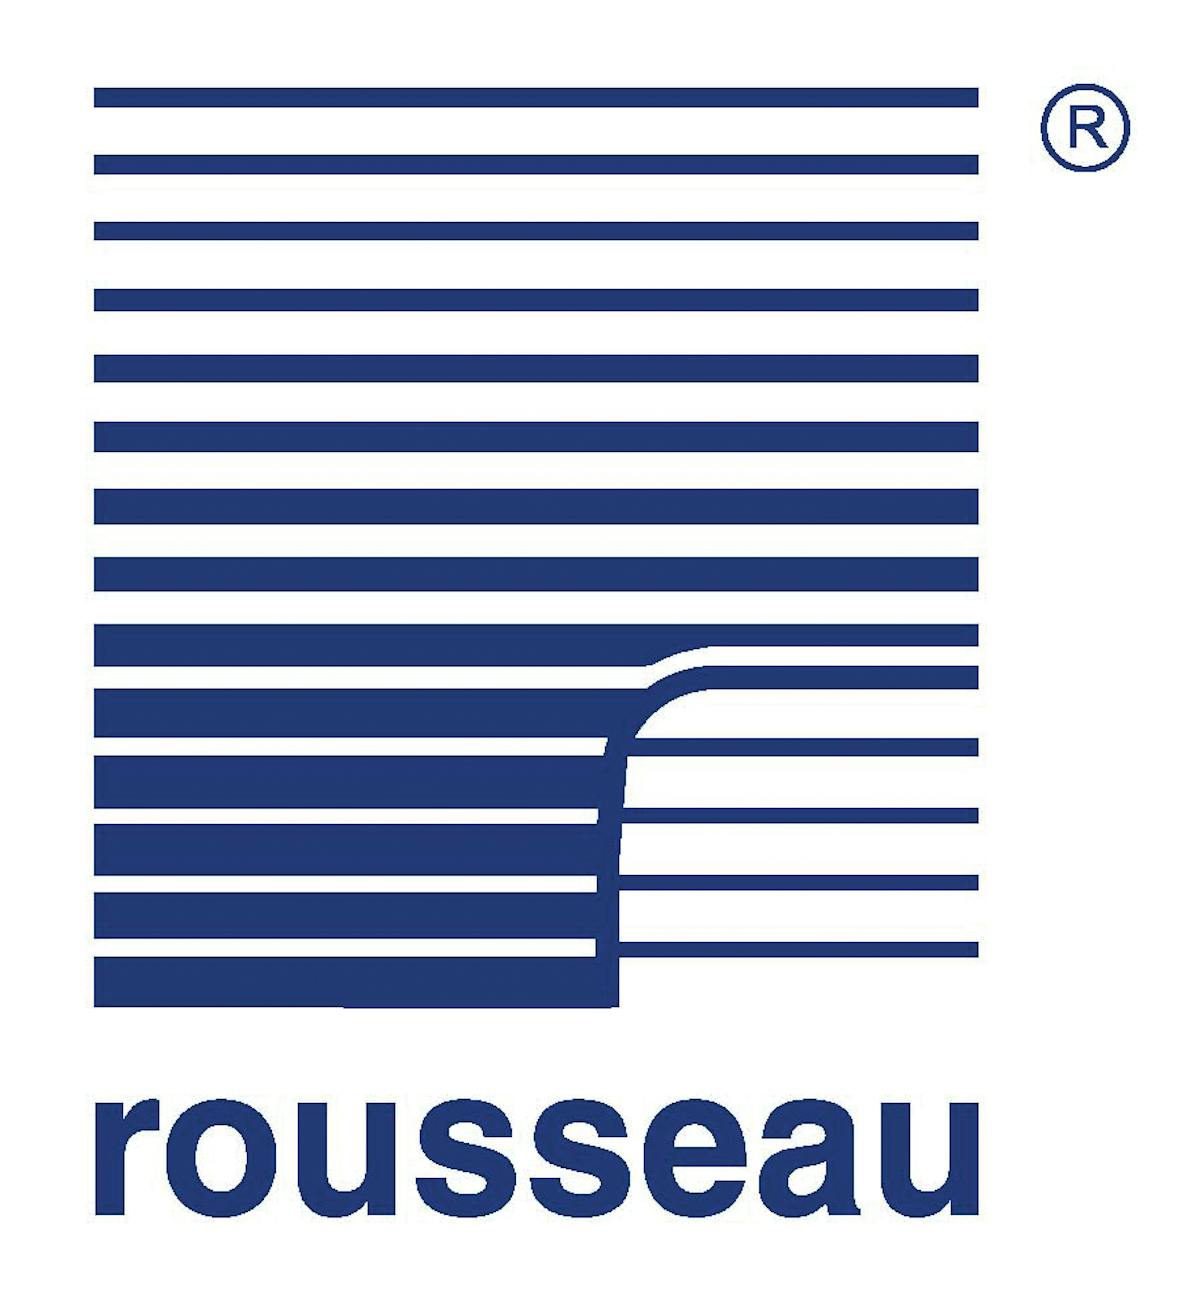 Rousseaulogo 10884599